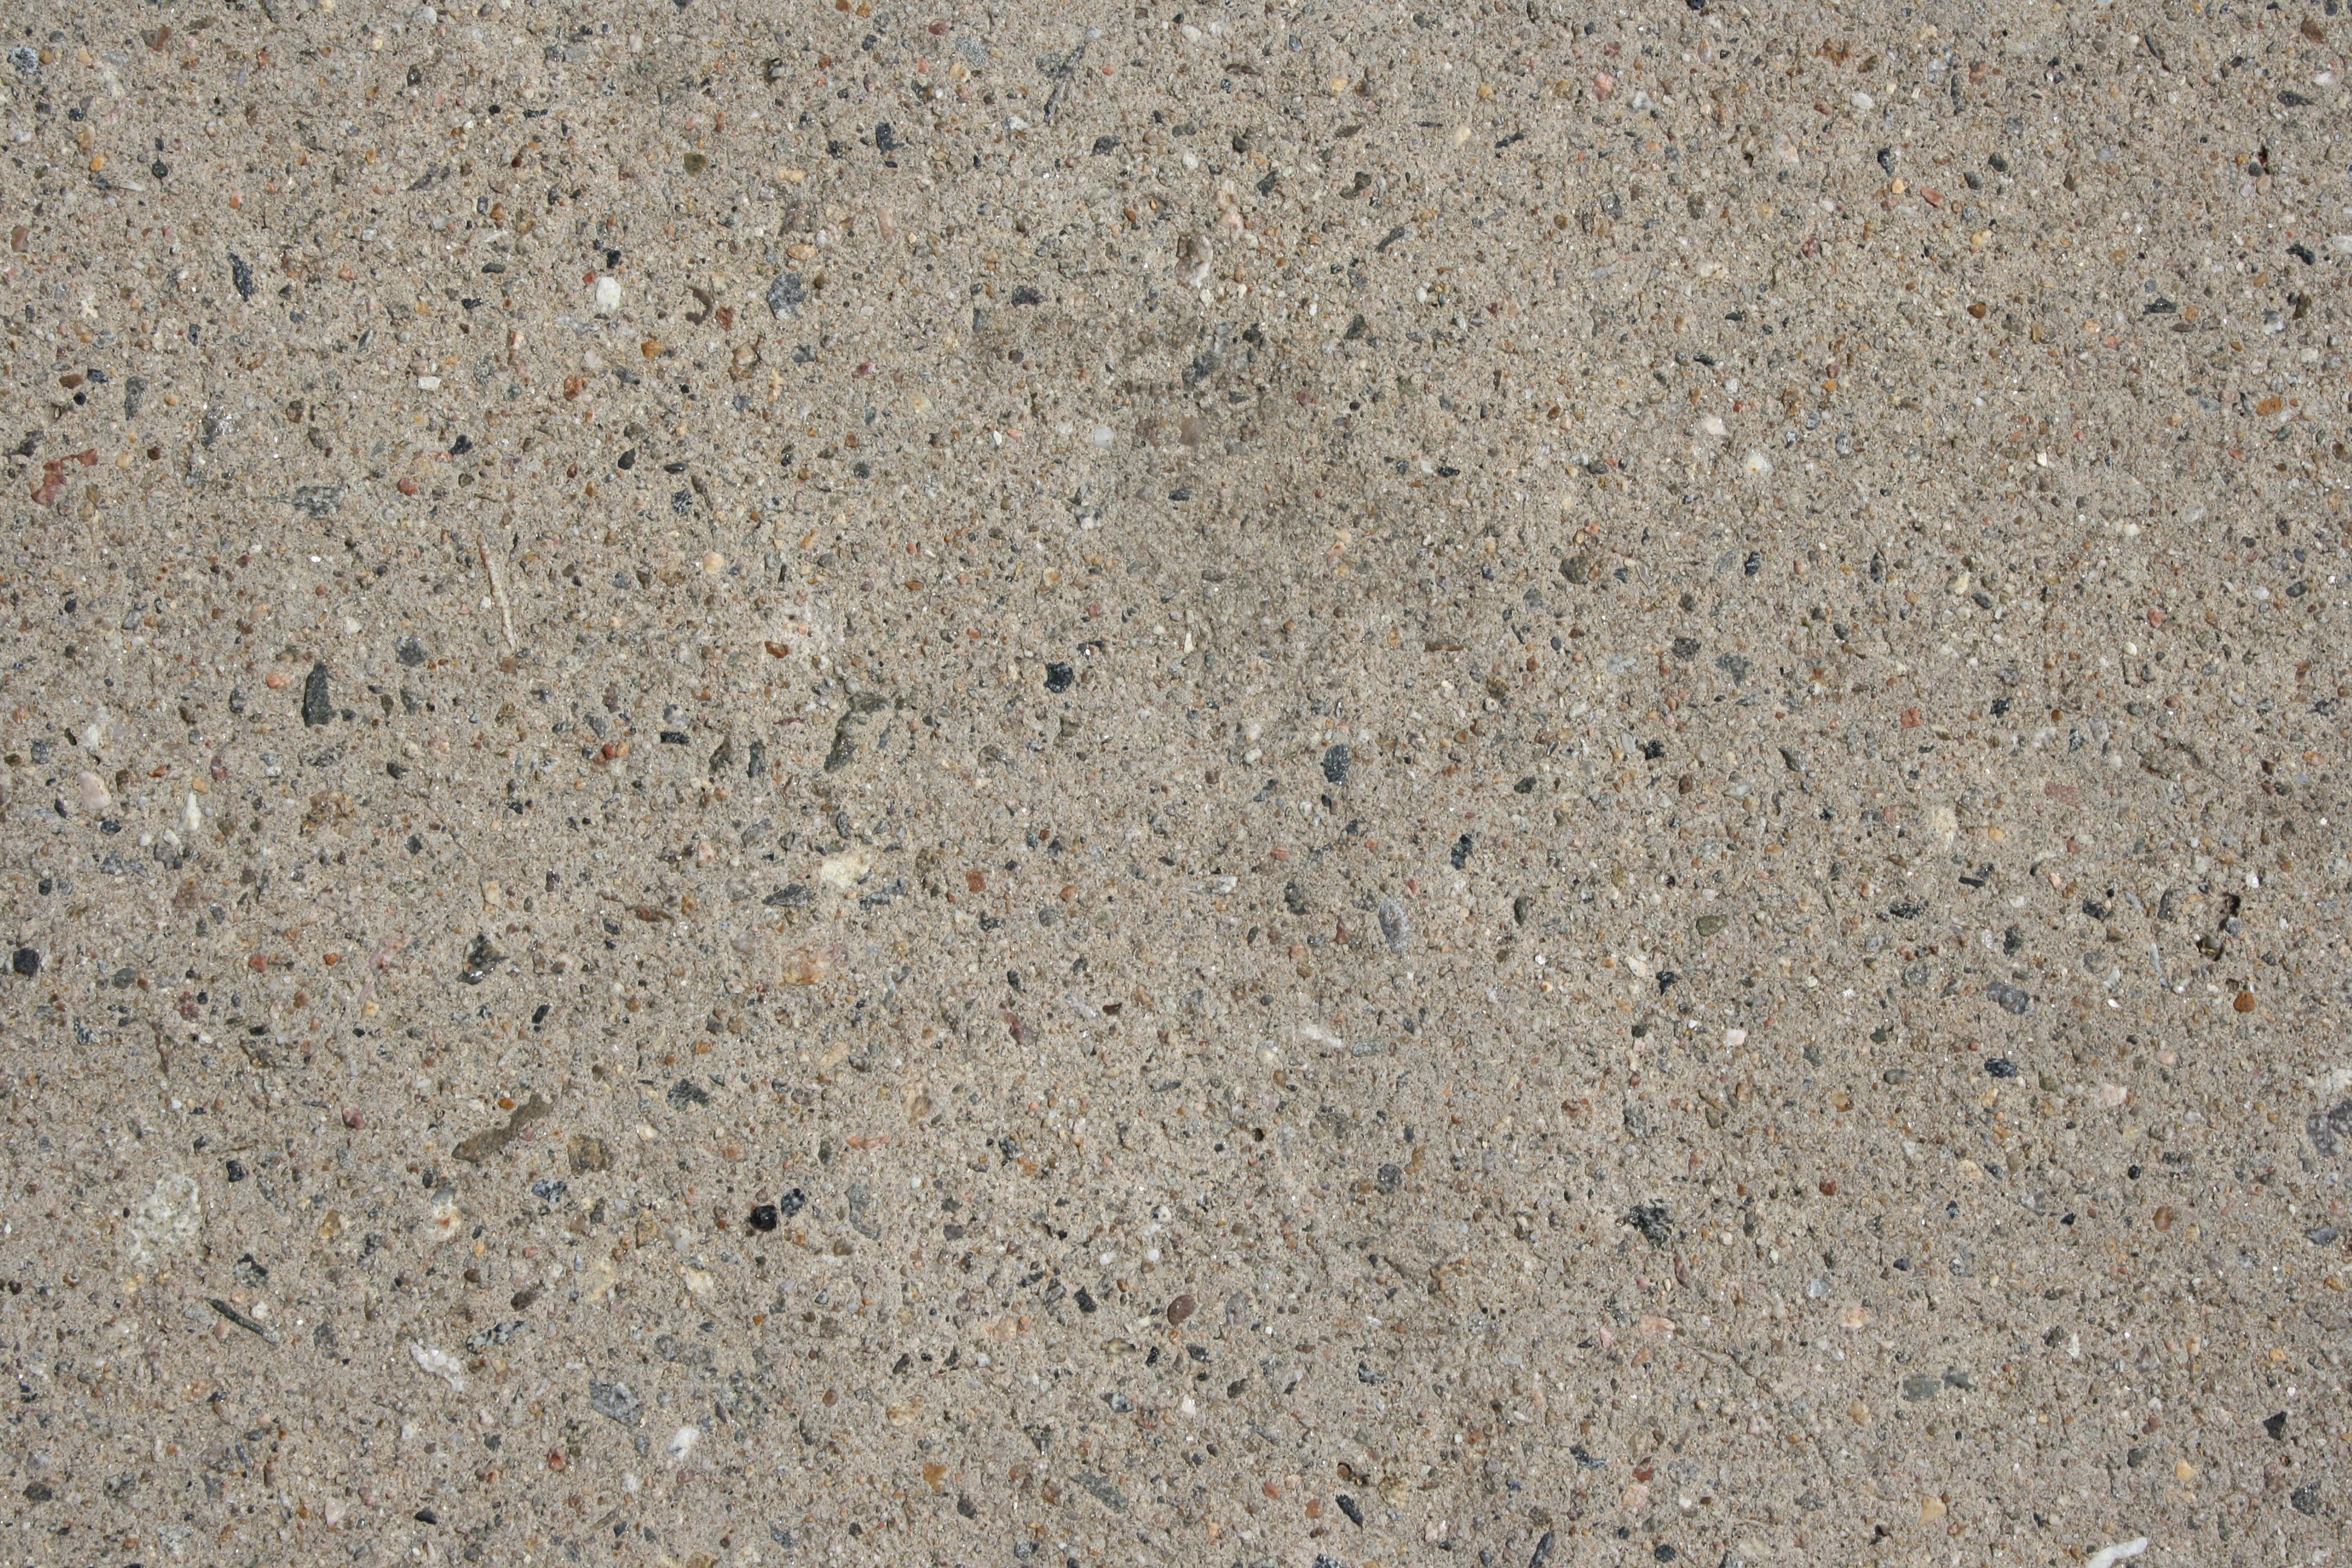 Cement Close Up Texture Picture | Free Photograph | Photos Public Domain